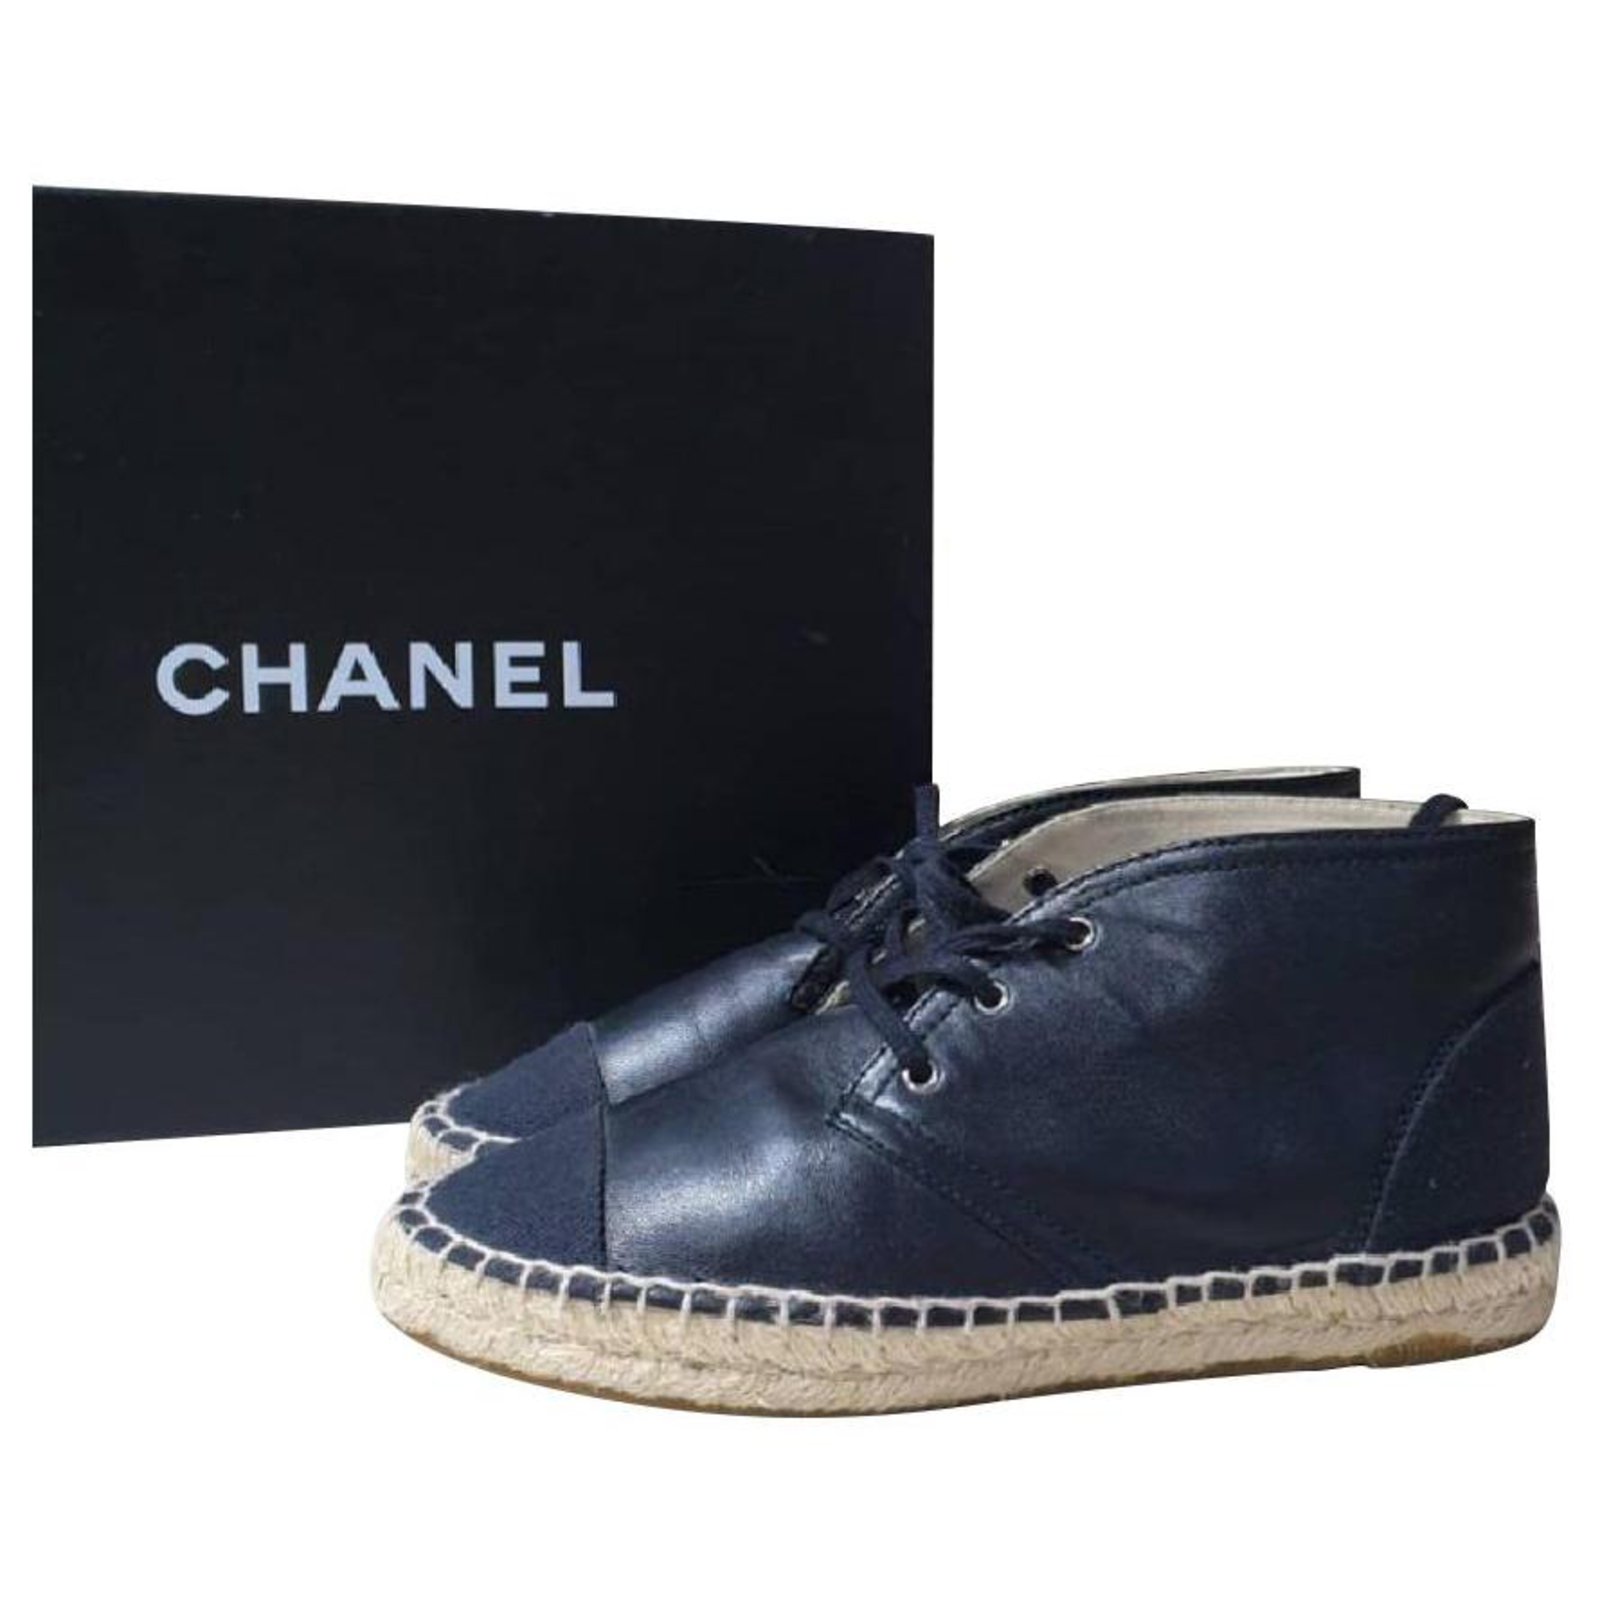 Espadrilles Chanel Chanel Black Leather CC Logo Espadrilles Size 37